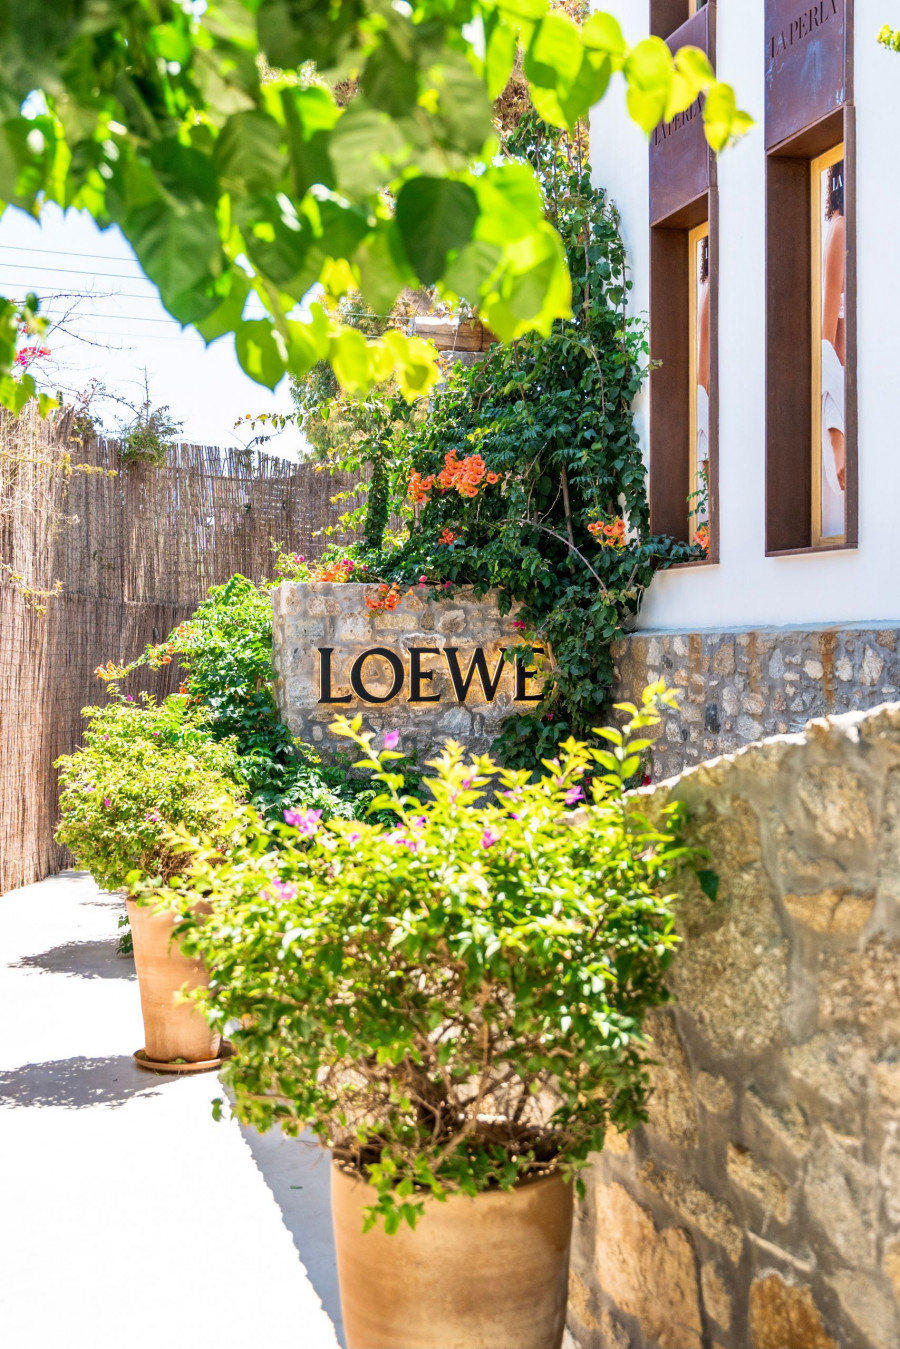 Ο οίκος Loewe και η οικογένεια Λιακωτίτη υποδέχονται το νέο Loewe Store στη Μύκονο